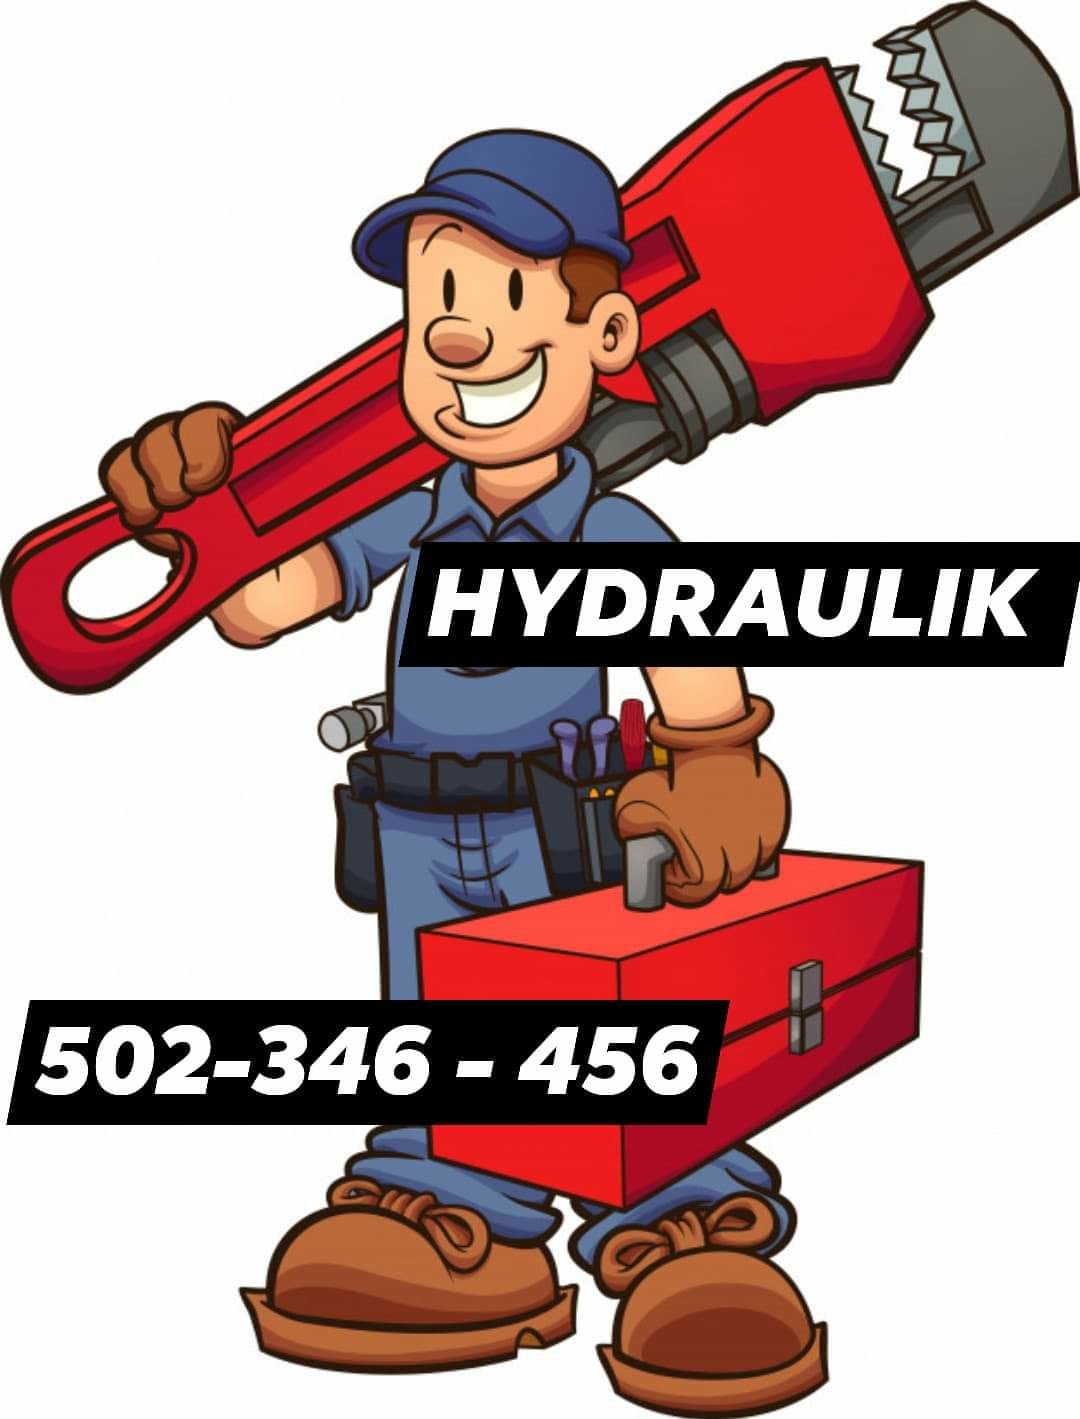 Hydraulik / usługi hydrauliczne